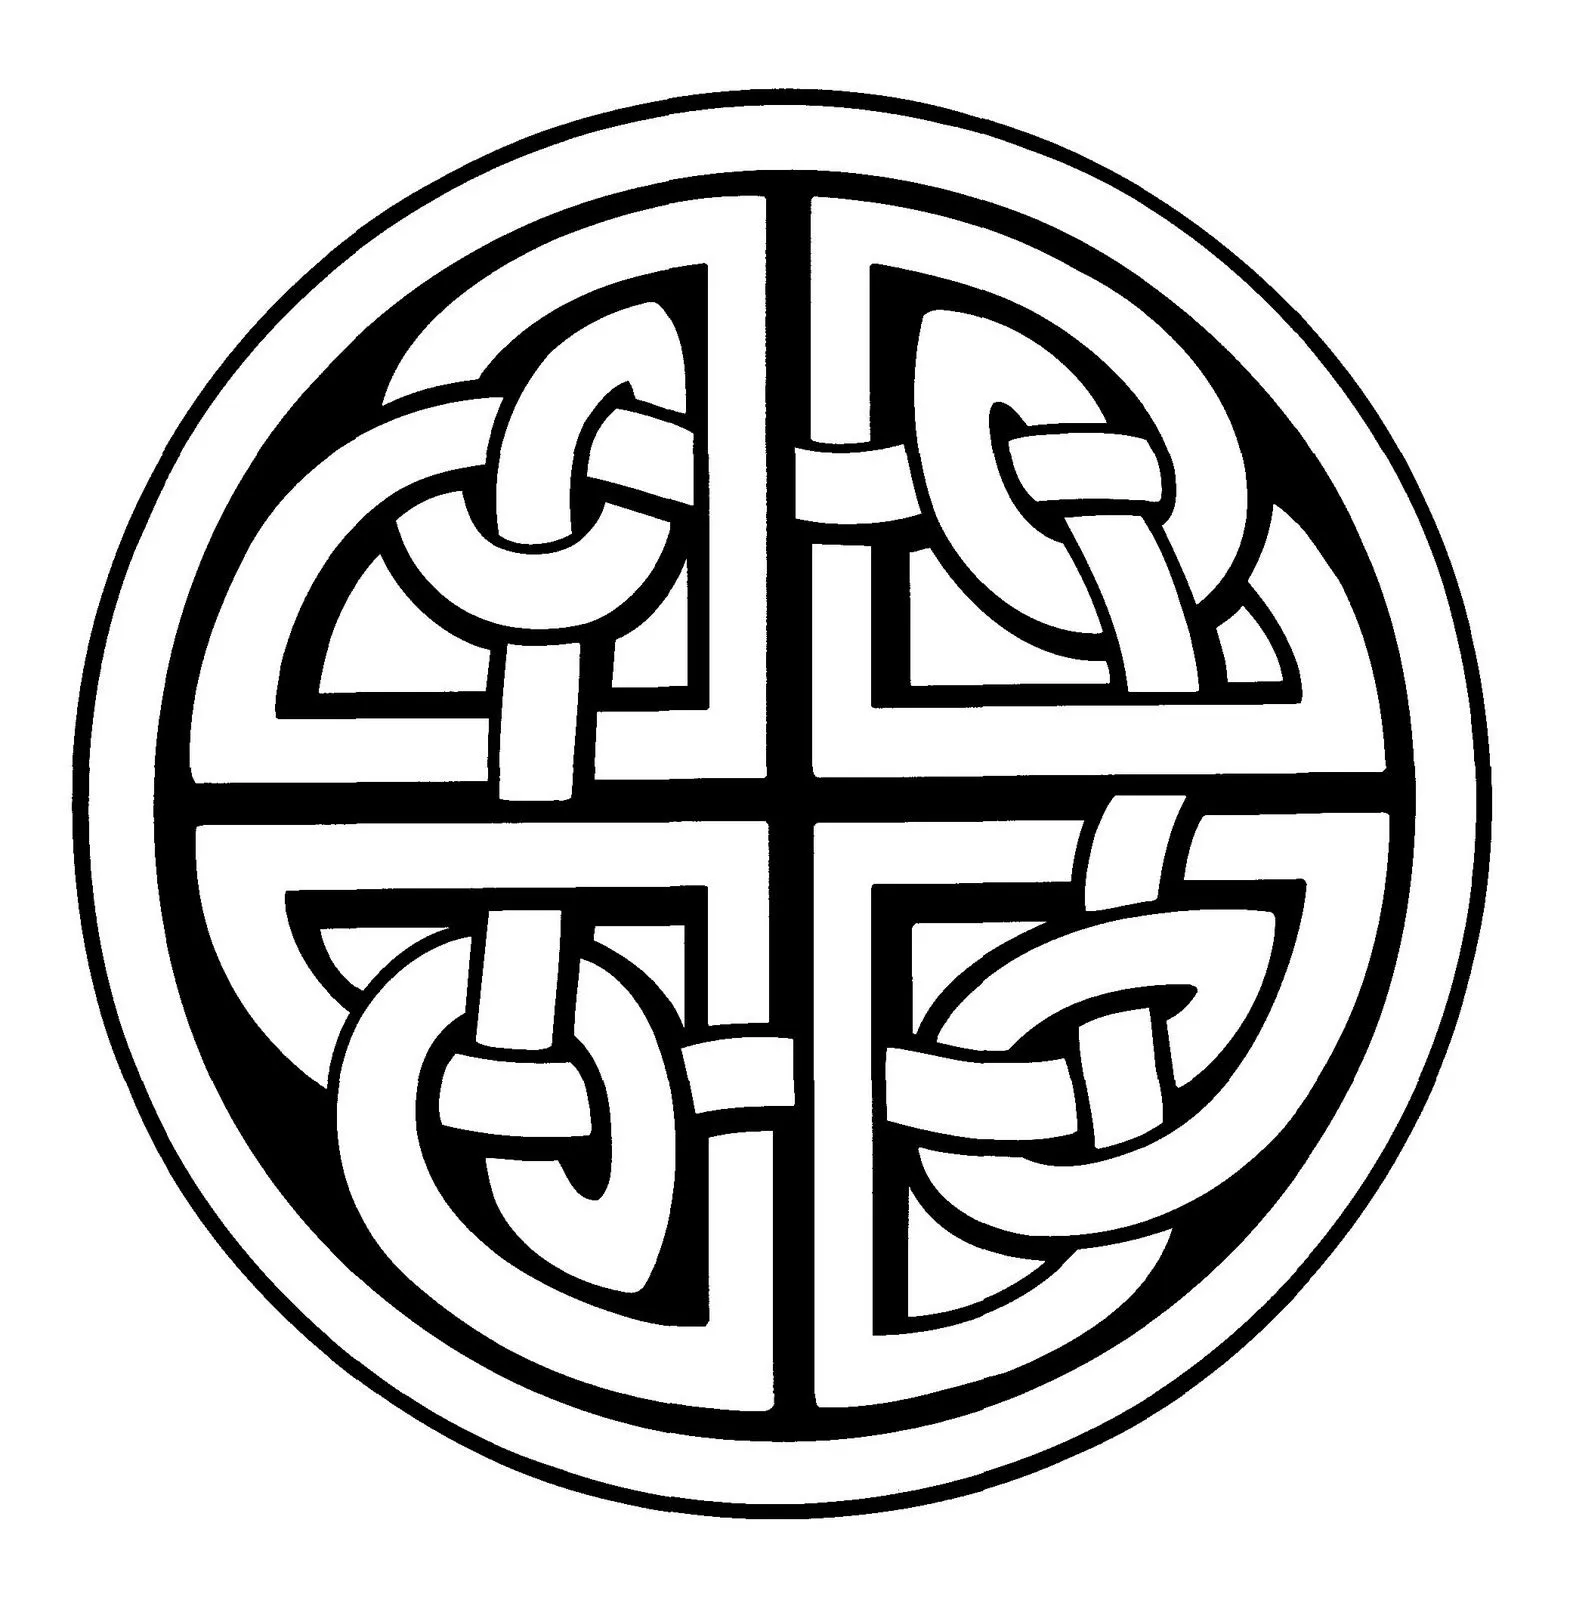 Simbolo celta proteccion - Imagui